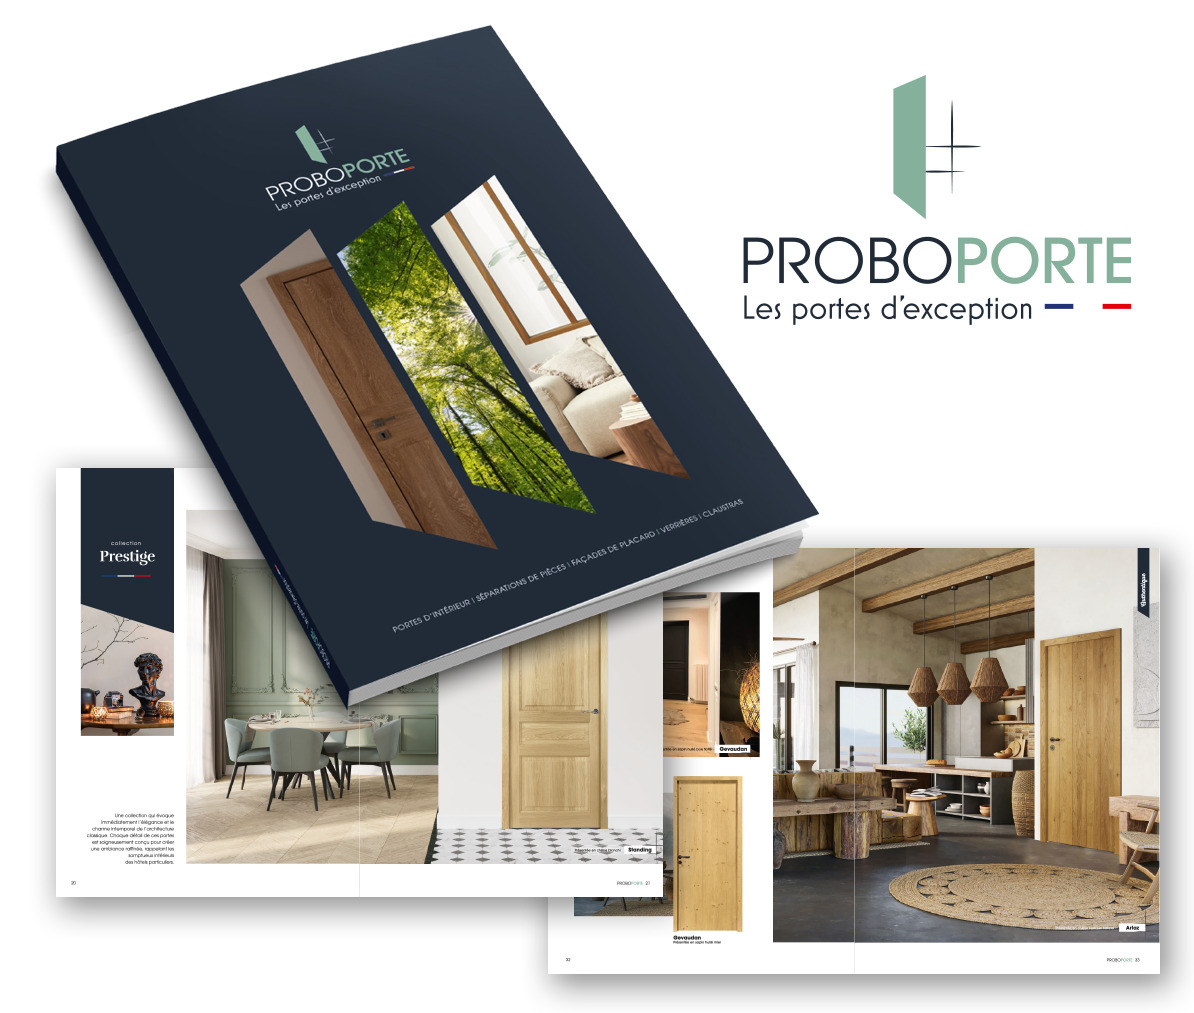 Nouvelle identité et création du catalogue pour Proboporte